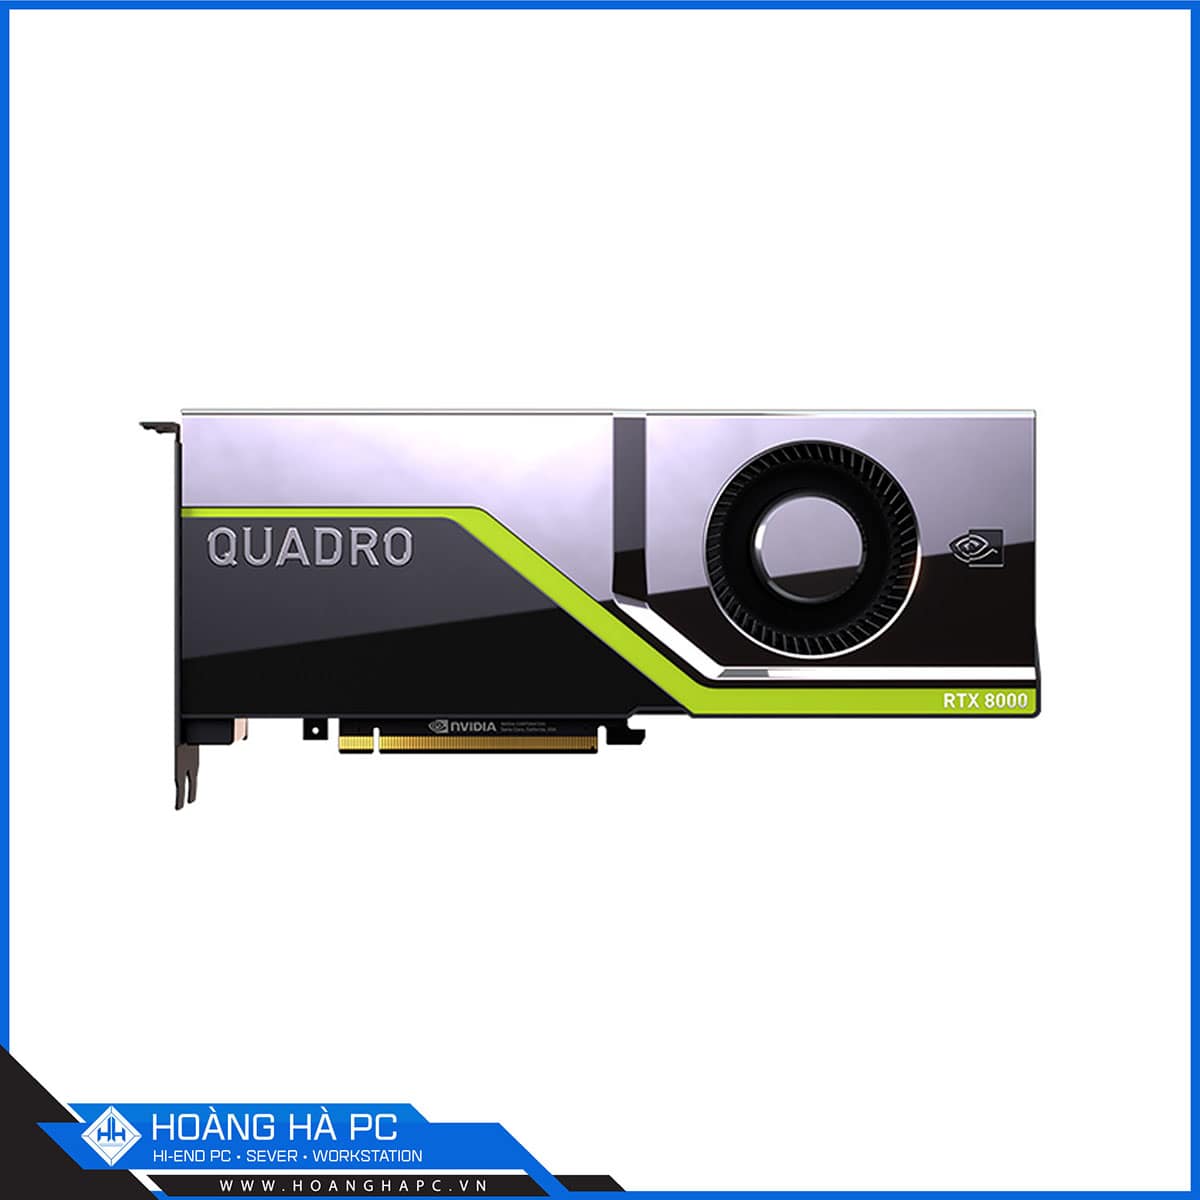 Quadro RTX 8000 - Card đồ họa siêu cao cấp